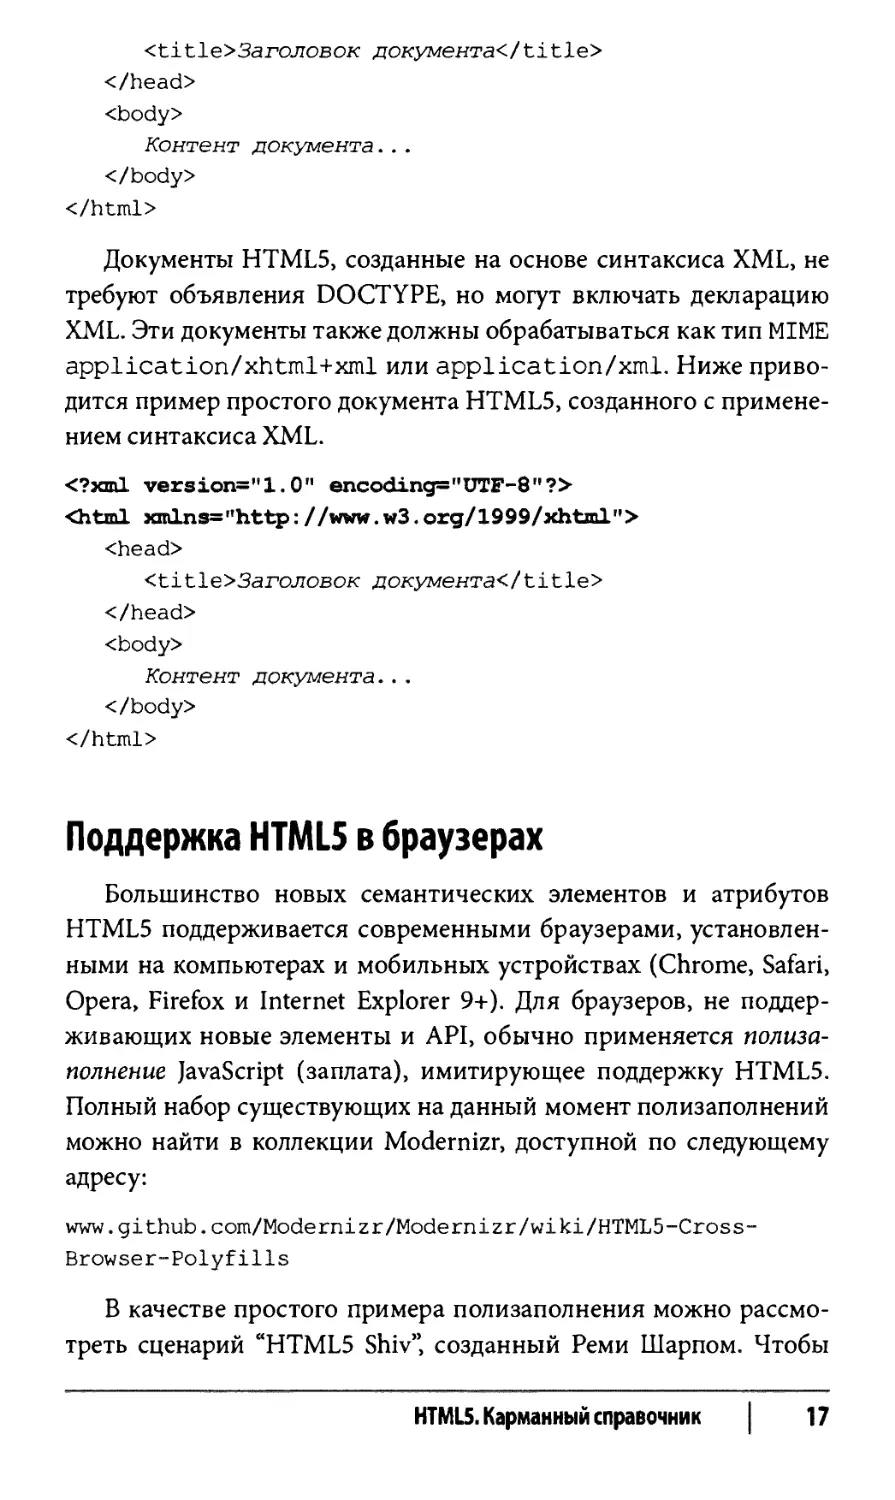 Поддержка HTML5 в браузерах